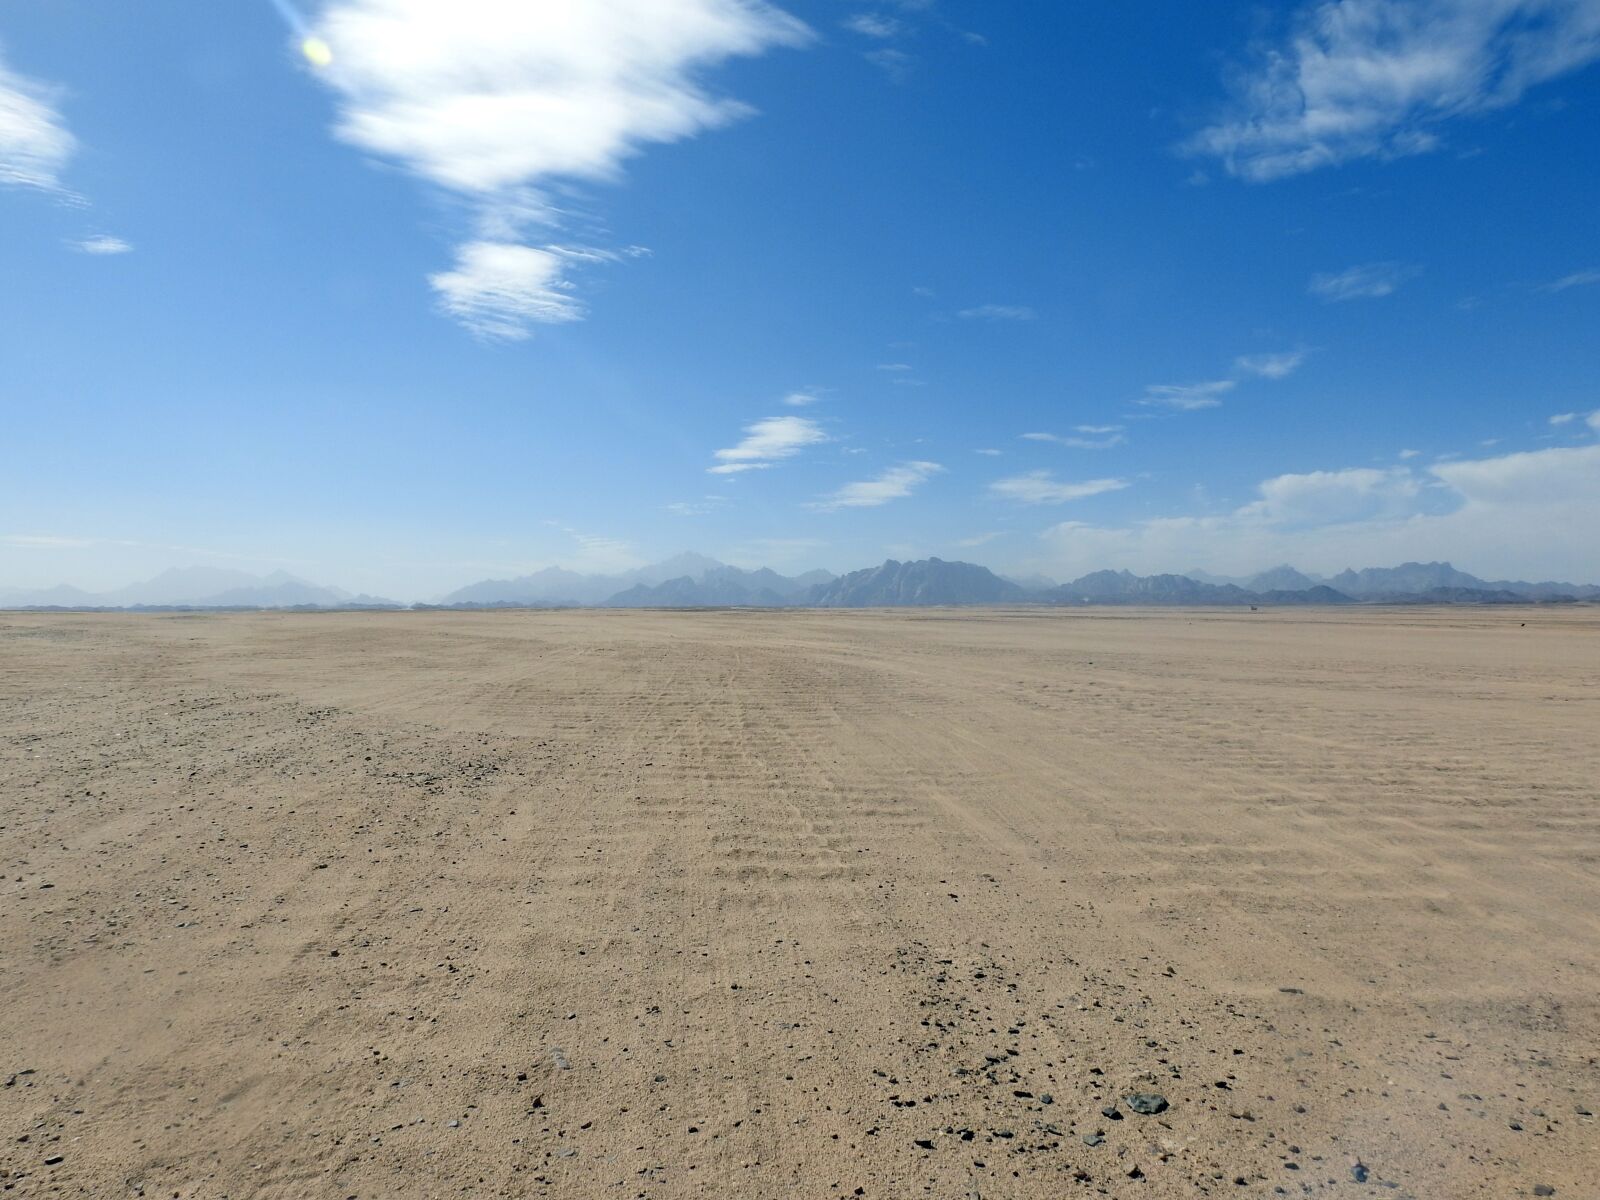 Nikon Coolpix P900 sample photo. Desert, sand, landscape photography